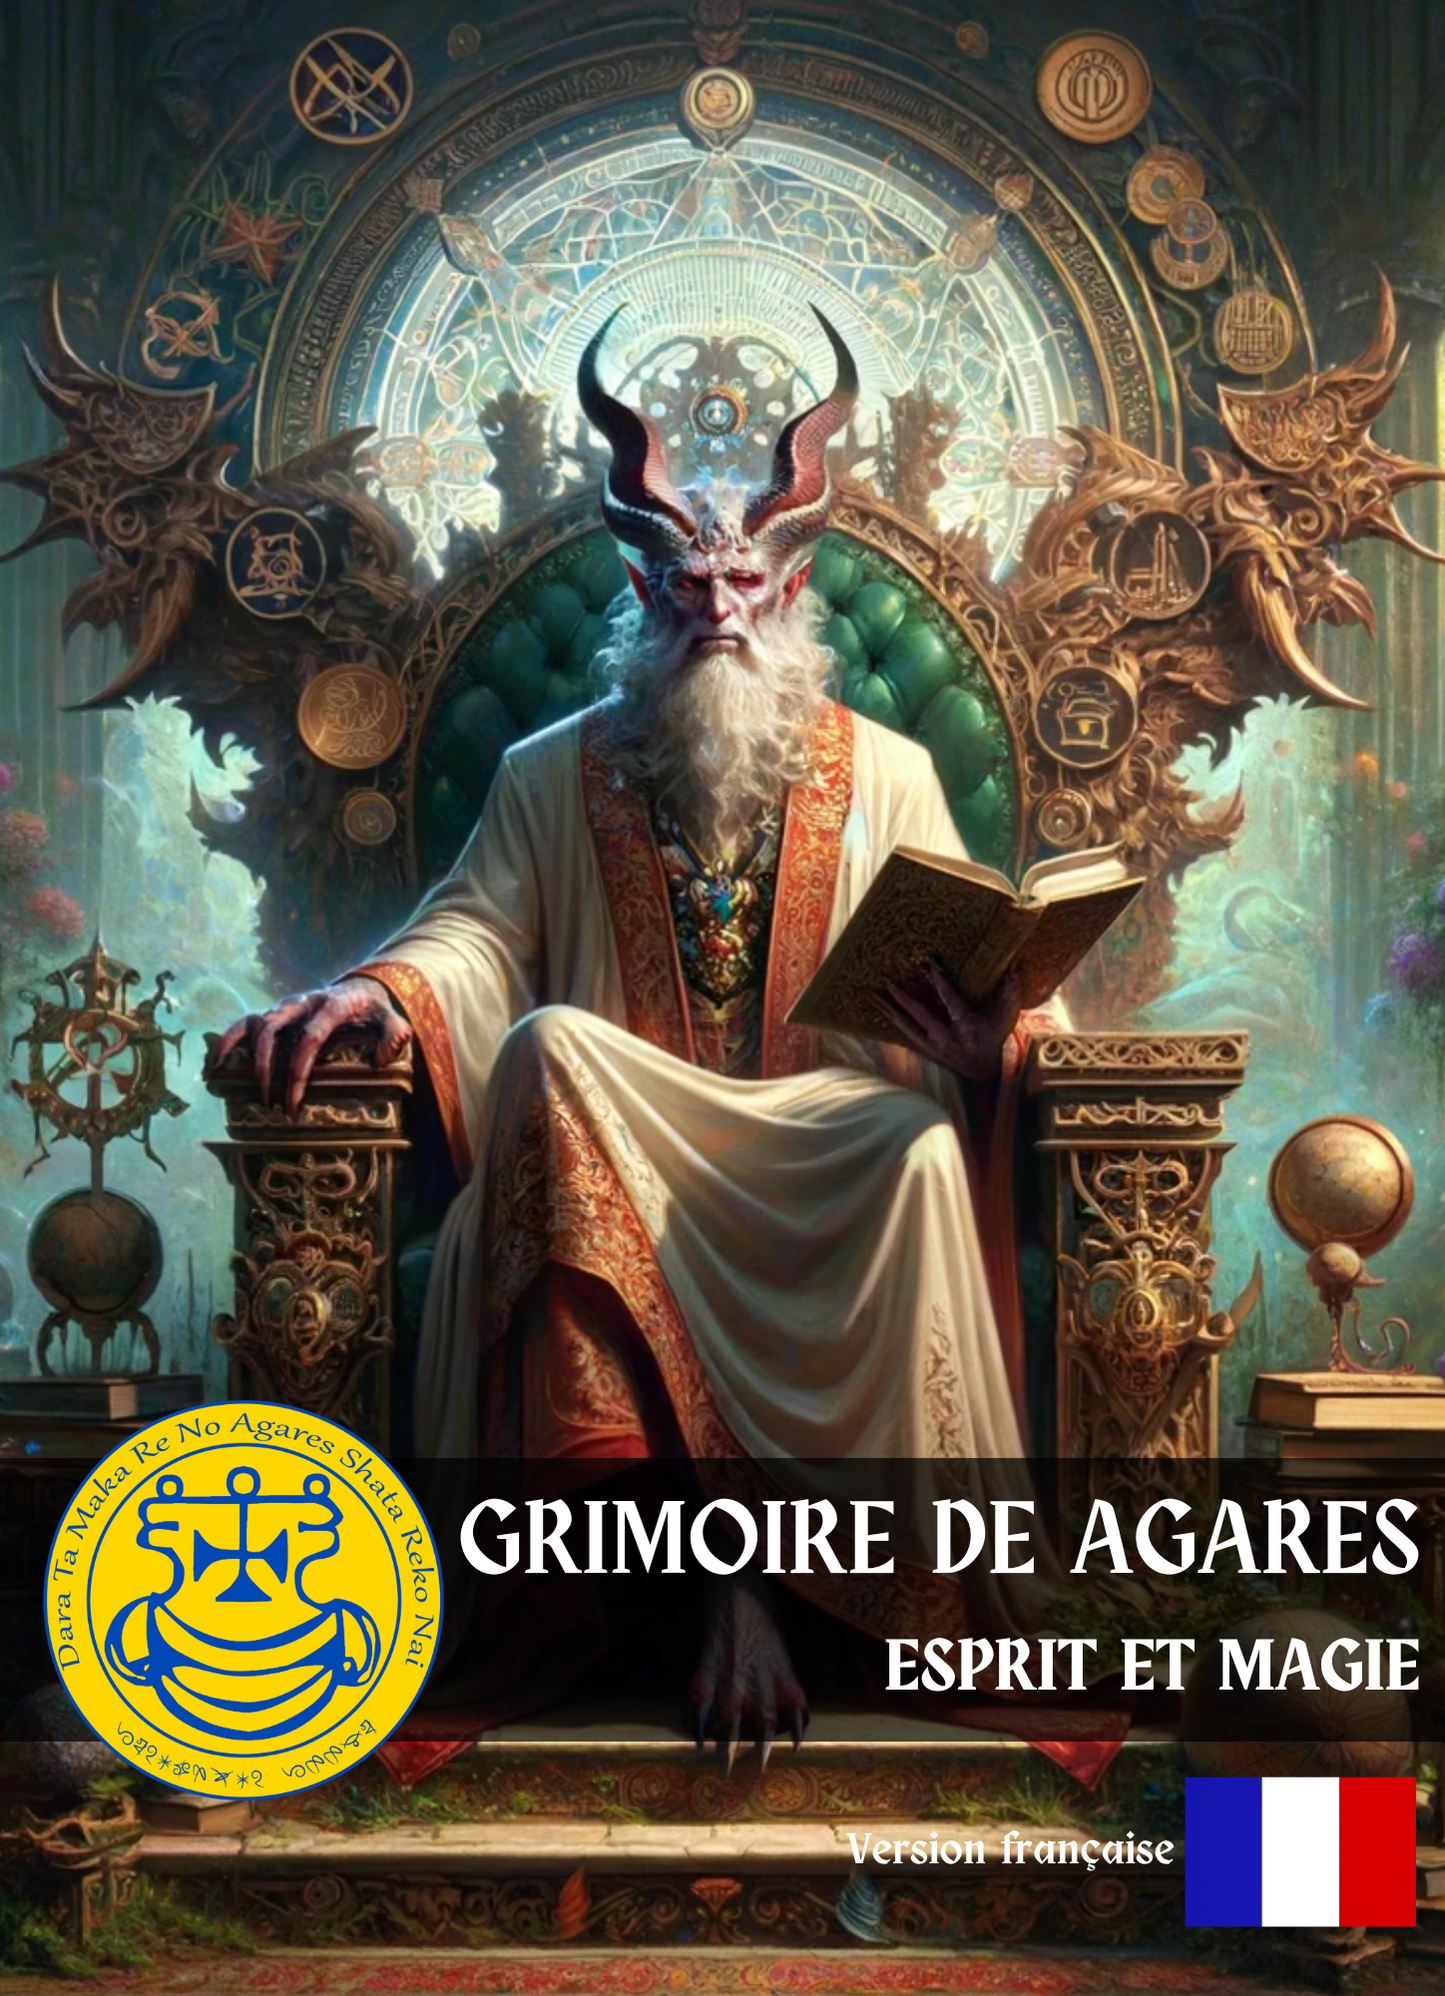 Grimoire Agares Cantus & Rituales amicitiae et notae sociales ad te ipsum - Abraxas Amuletes ® Magic Talismans Initiationes